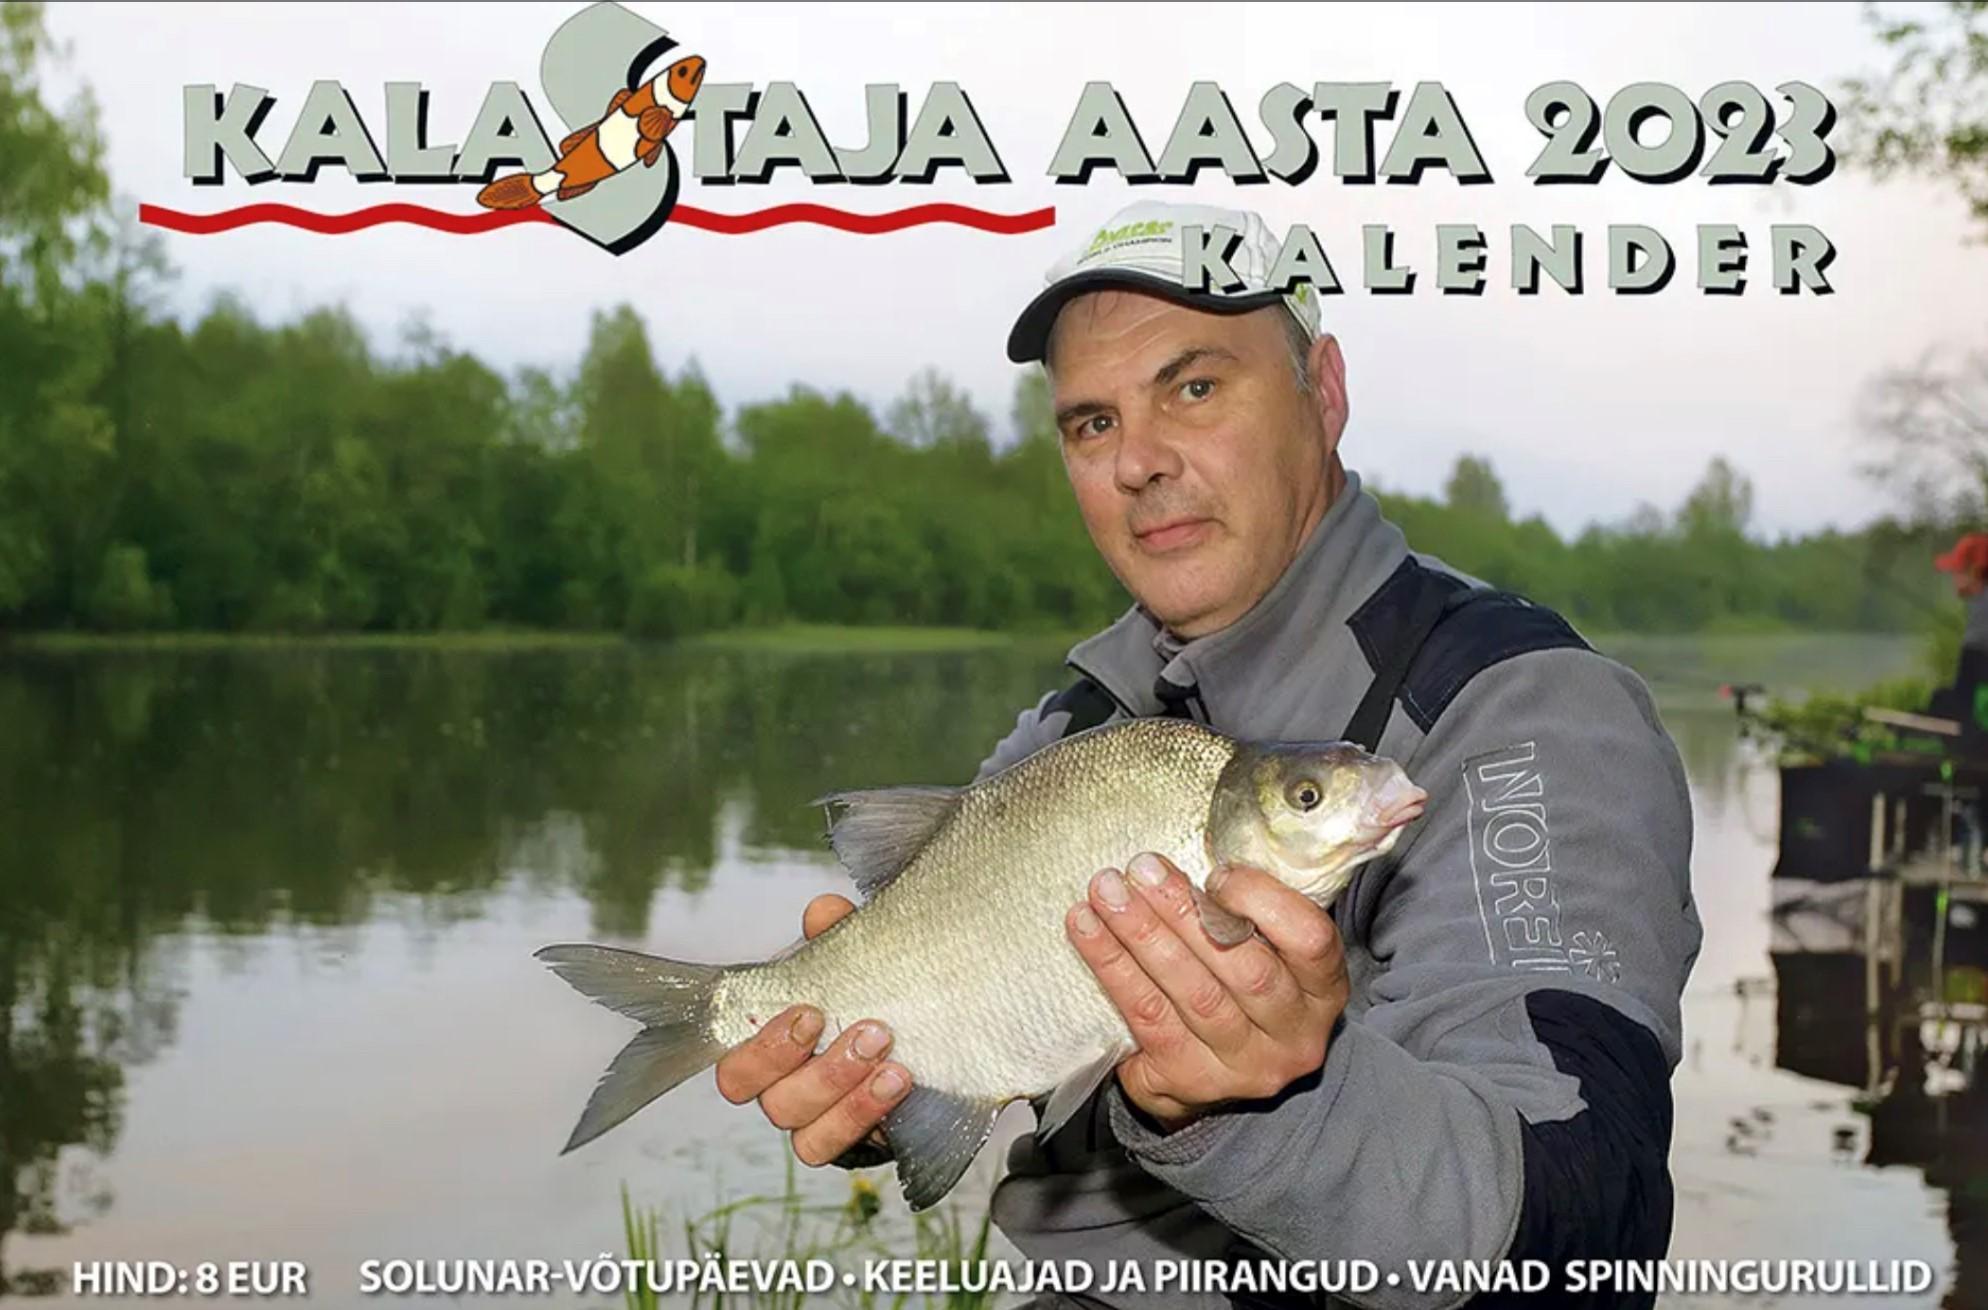 Kalastaja aasta kalender 2023